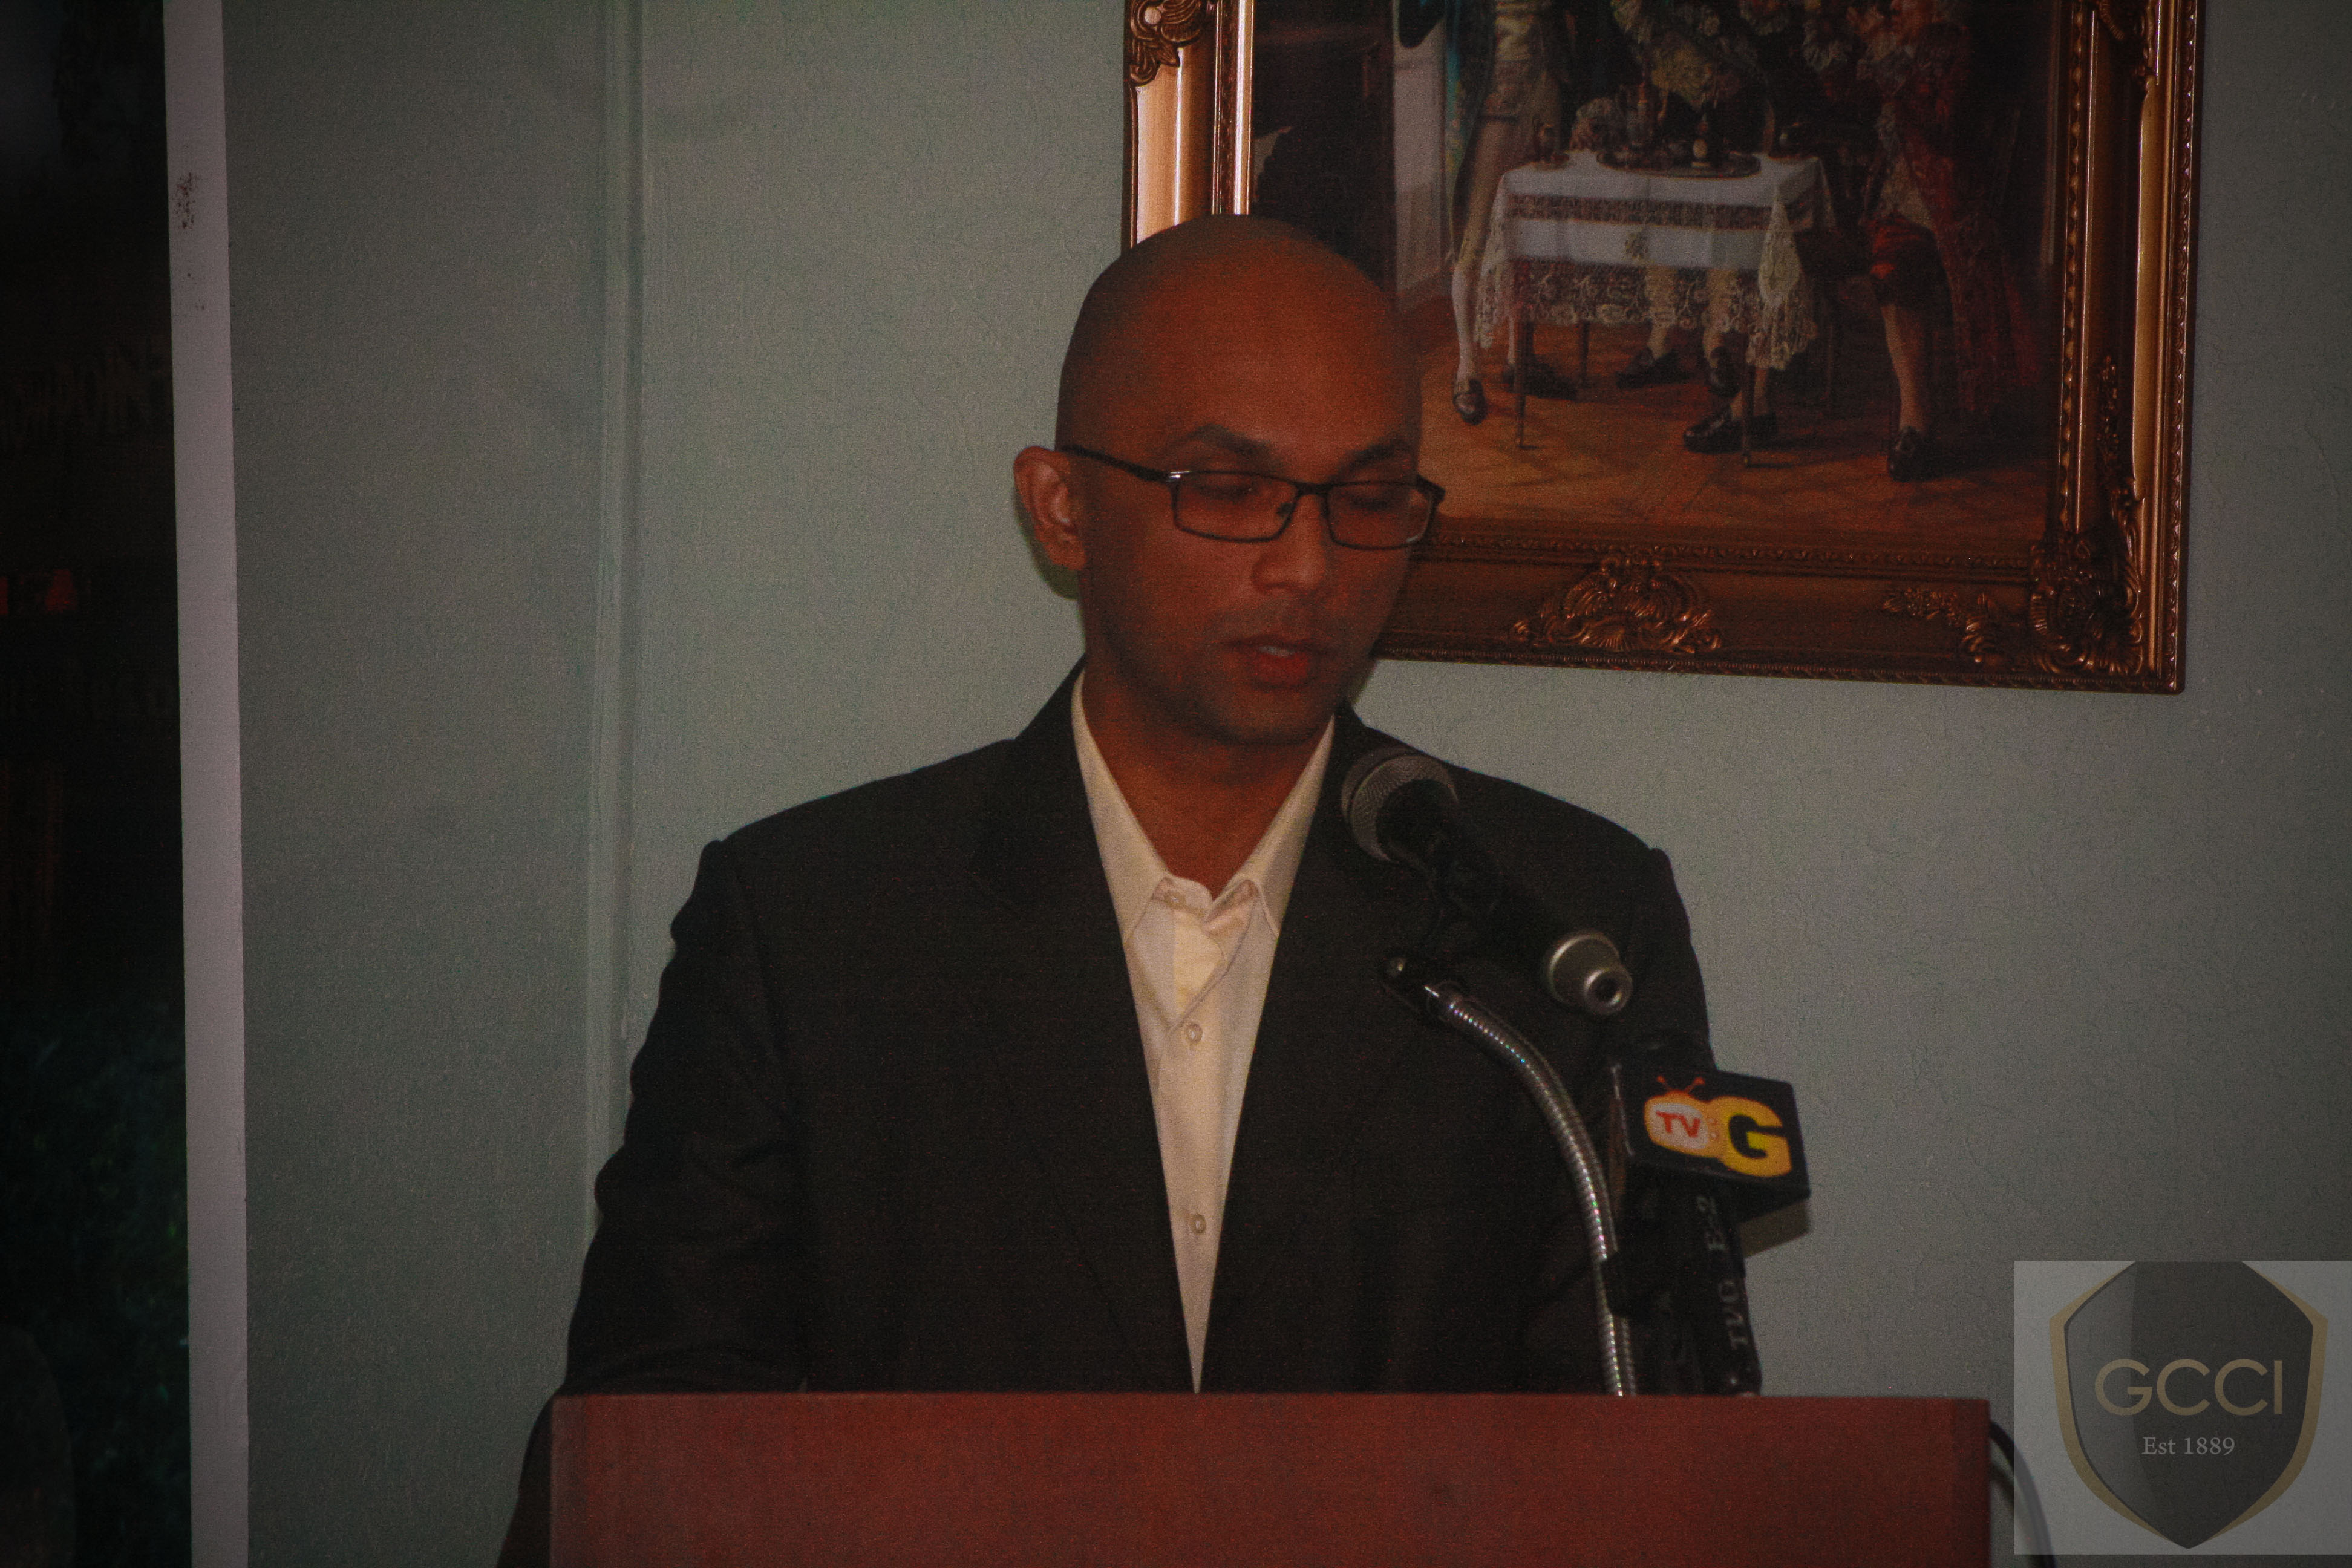 Speech given by Junior Vice President, Mr. Vishnu Doerga at the Dale Carnegie Workshop